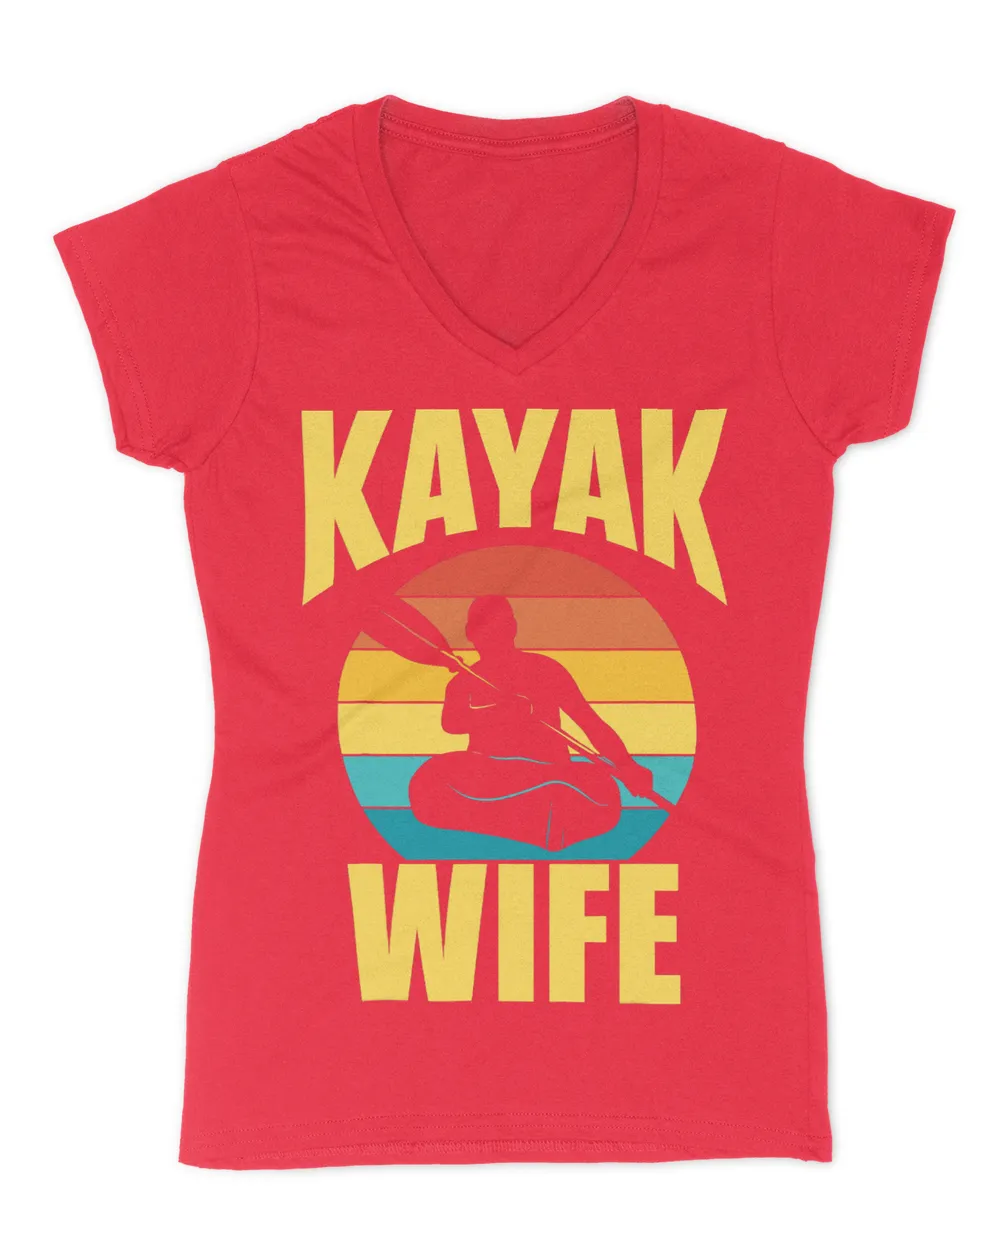 Kayak Water Wife Hobby Kayakist Kayaking Kayaks